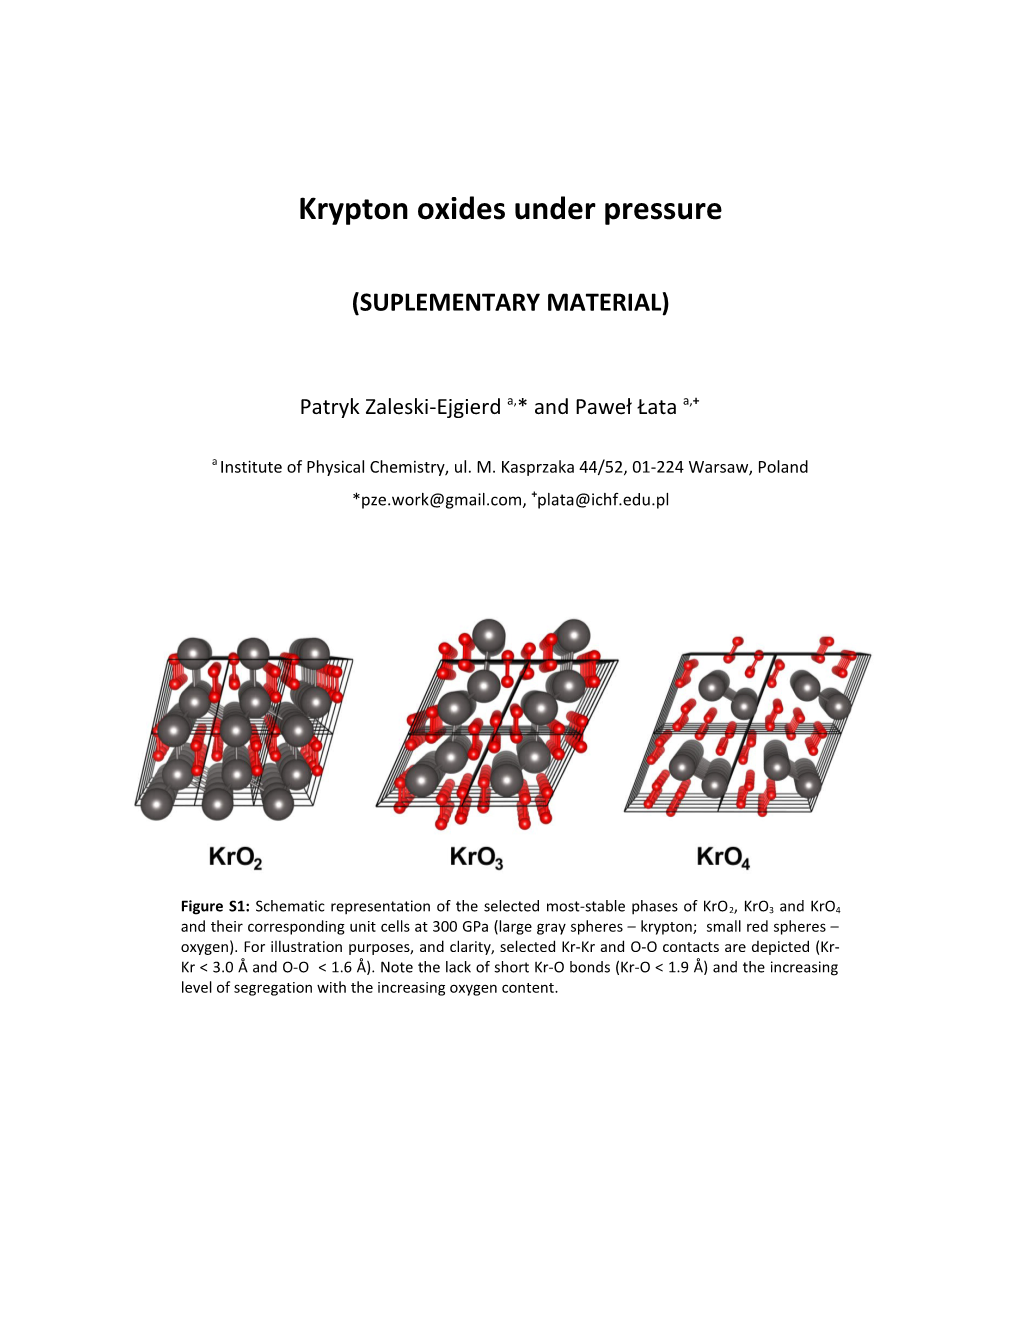 Krypton Oxides Under Pressure